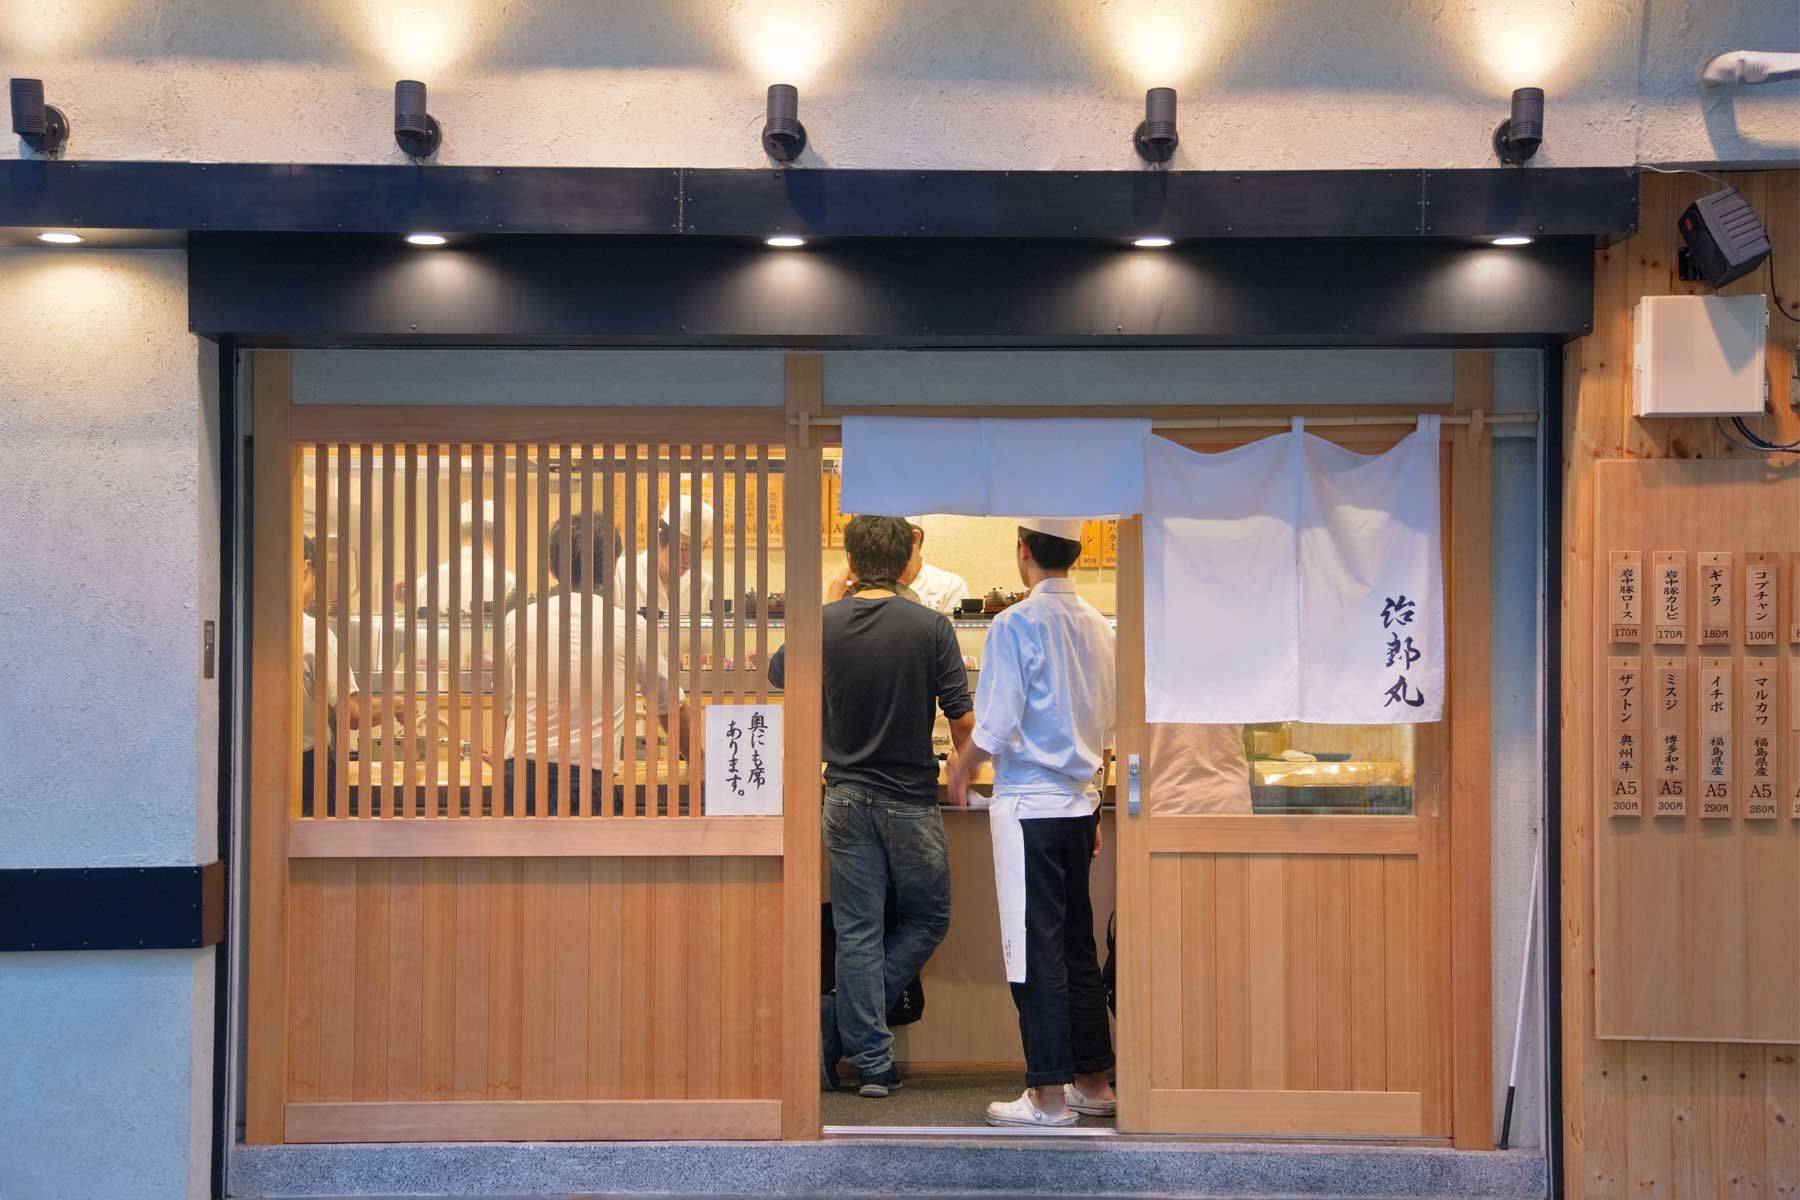 Ein Restaurant in Tokio, Japan